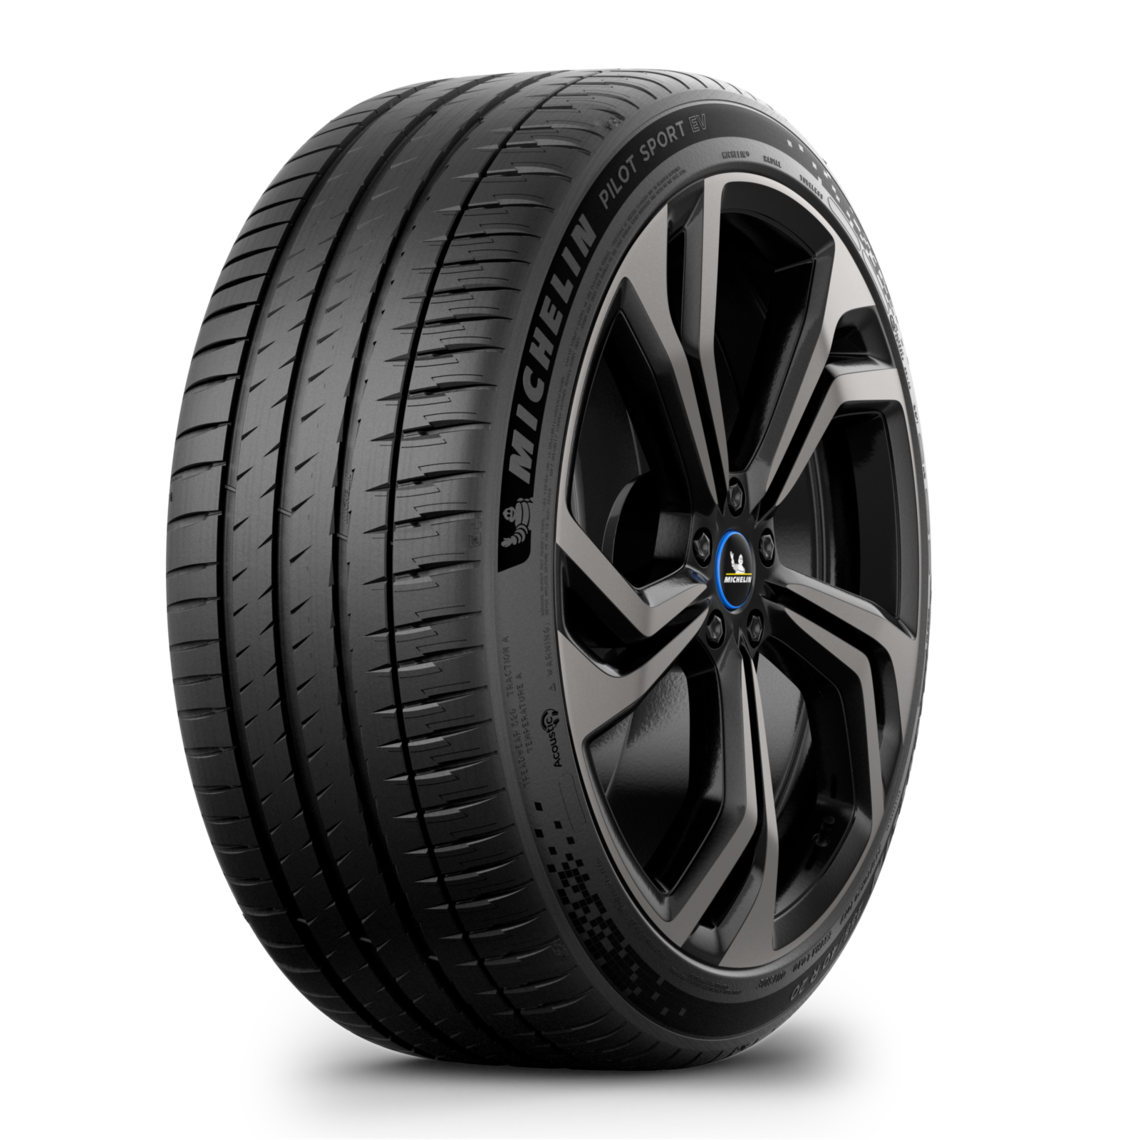 Gomme Nuove Michelin 235/45 R20 100V PILOT SPORT EV pneumatici nuovi Estivo